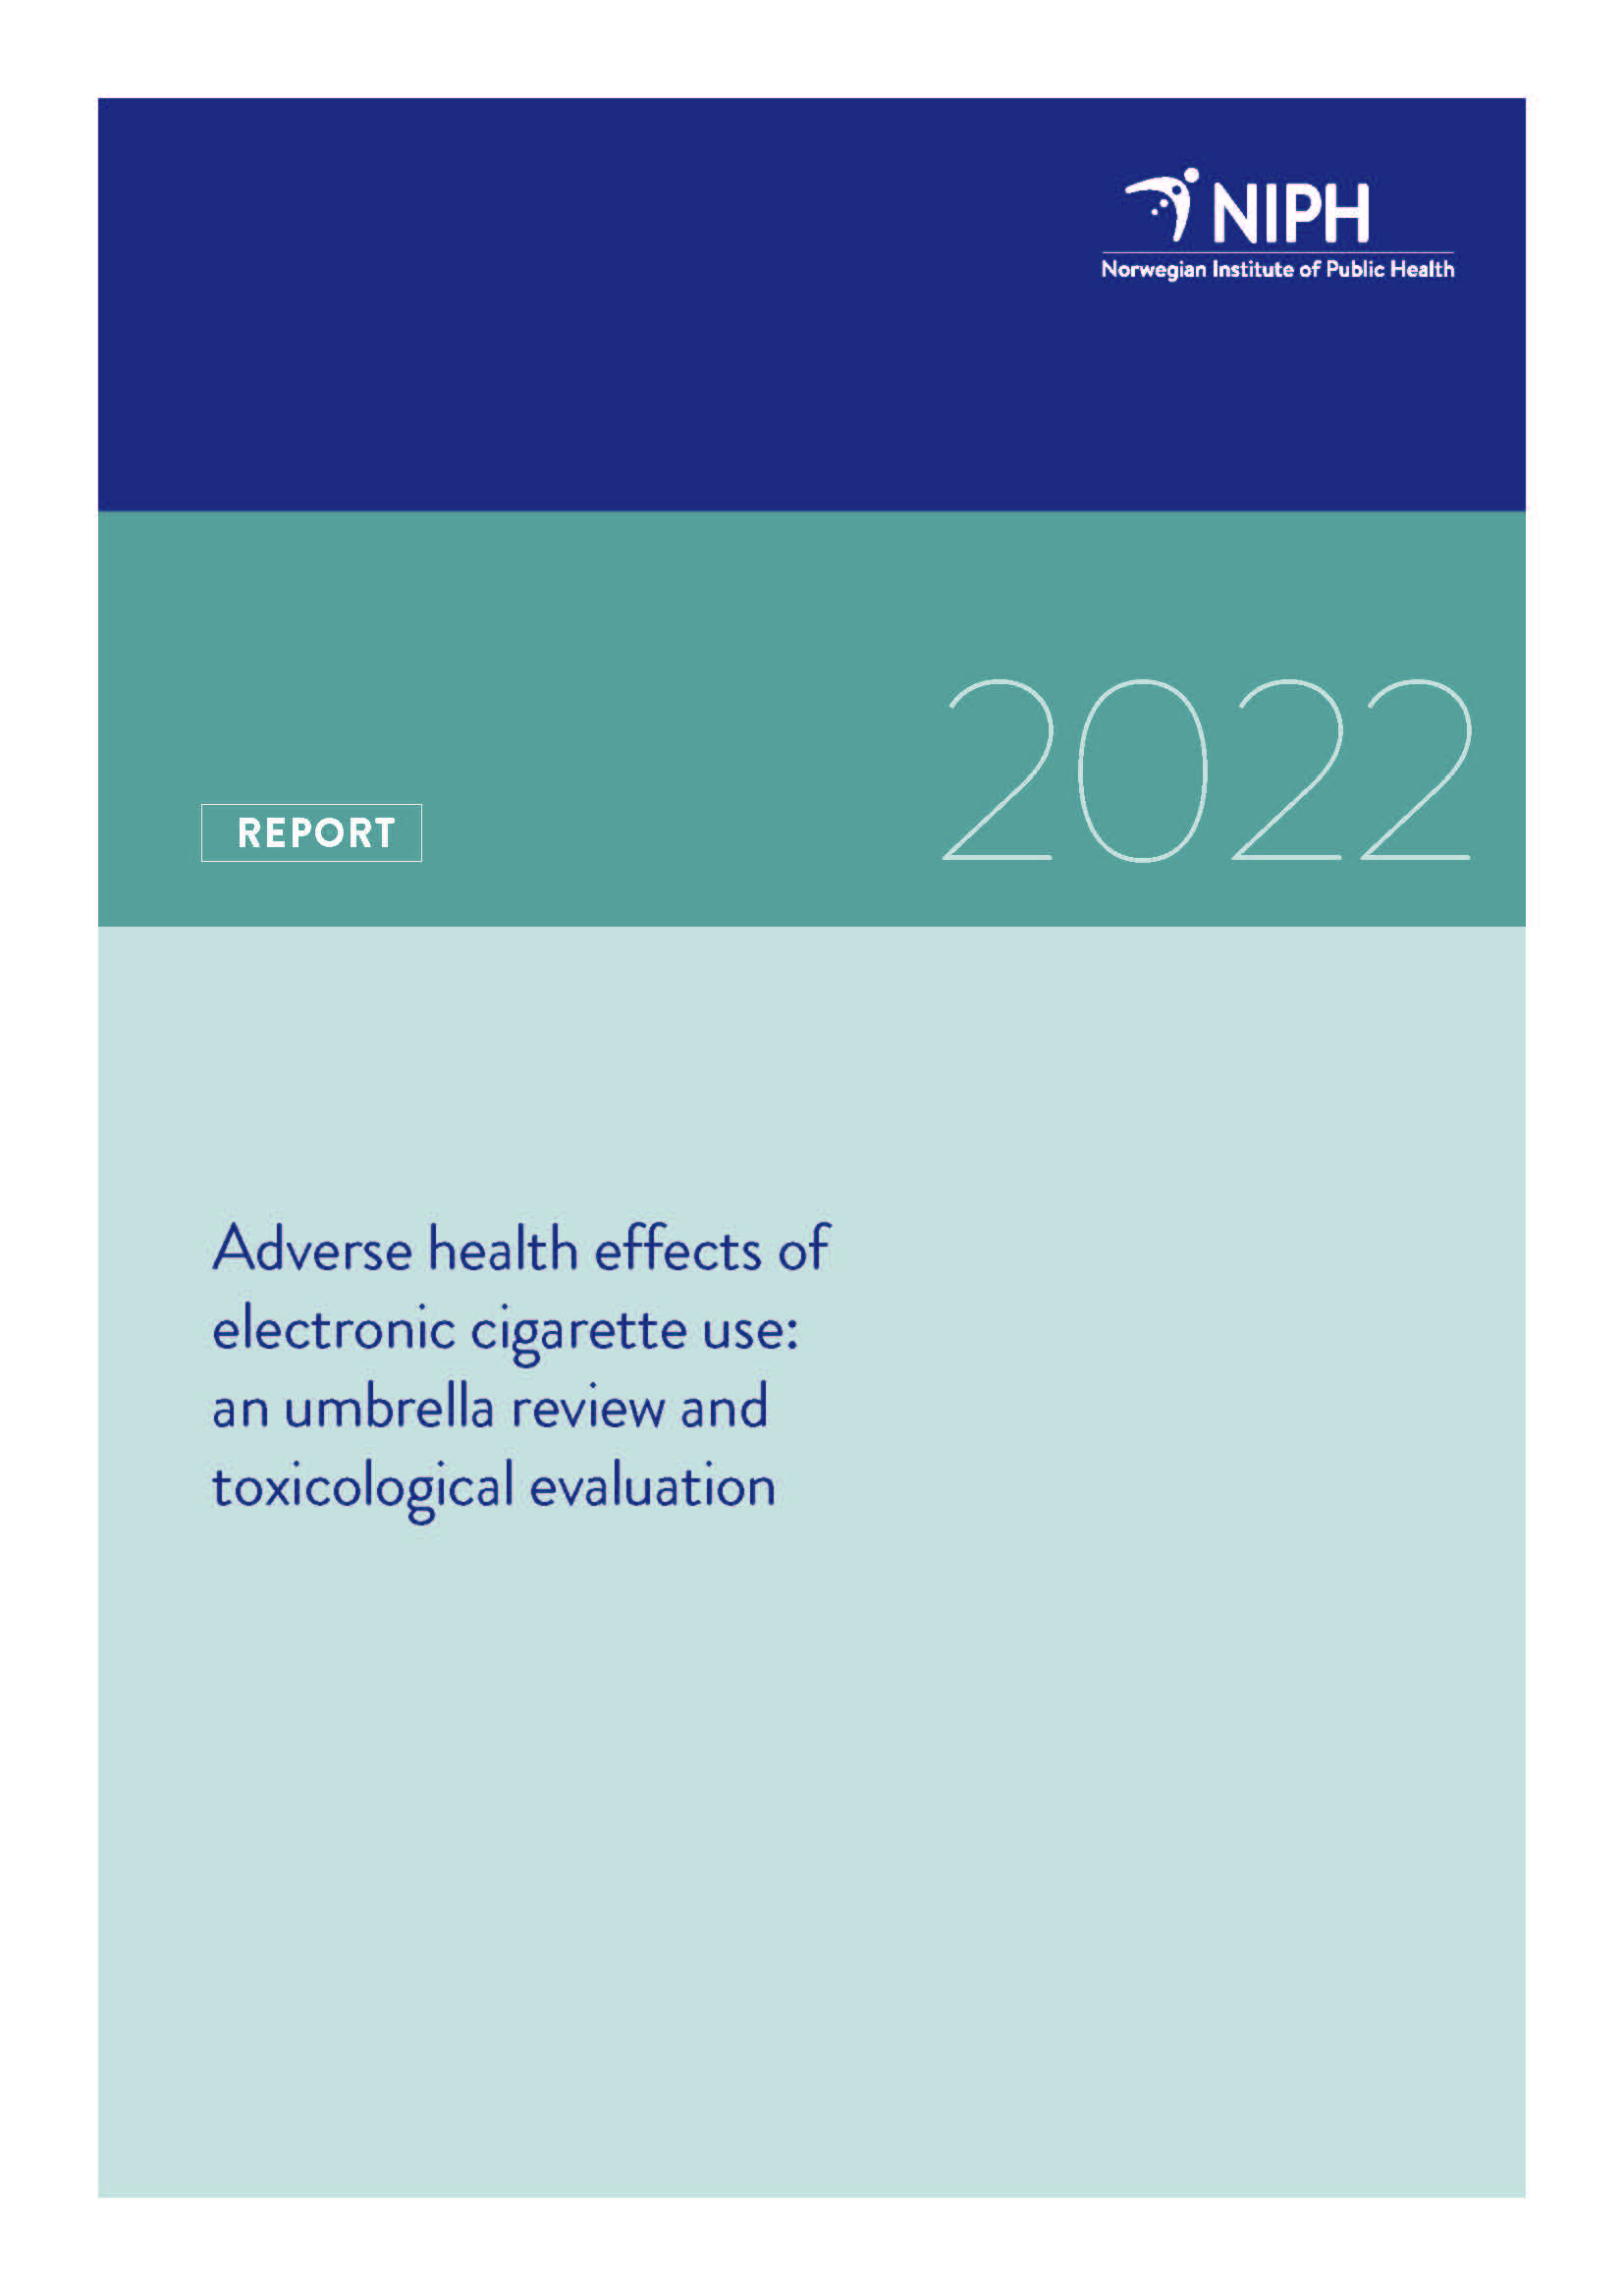 Forside kunnskapsoppsummering_e-sigaretter_2022.jpg